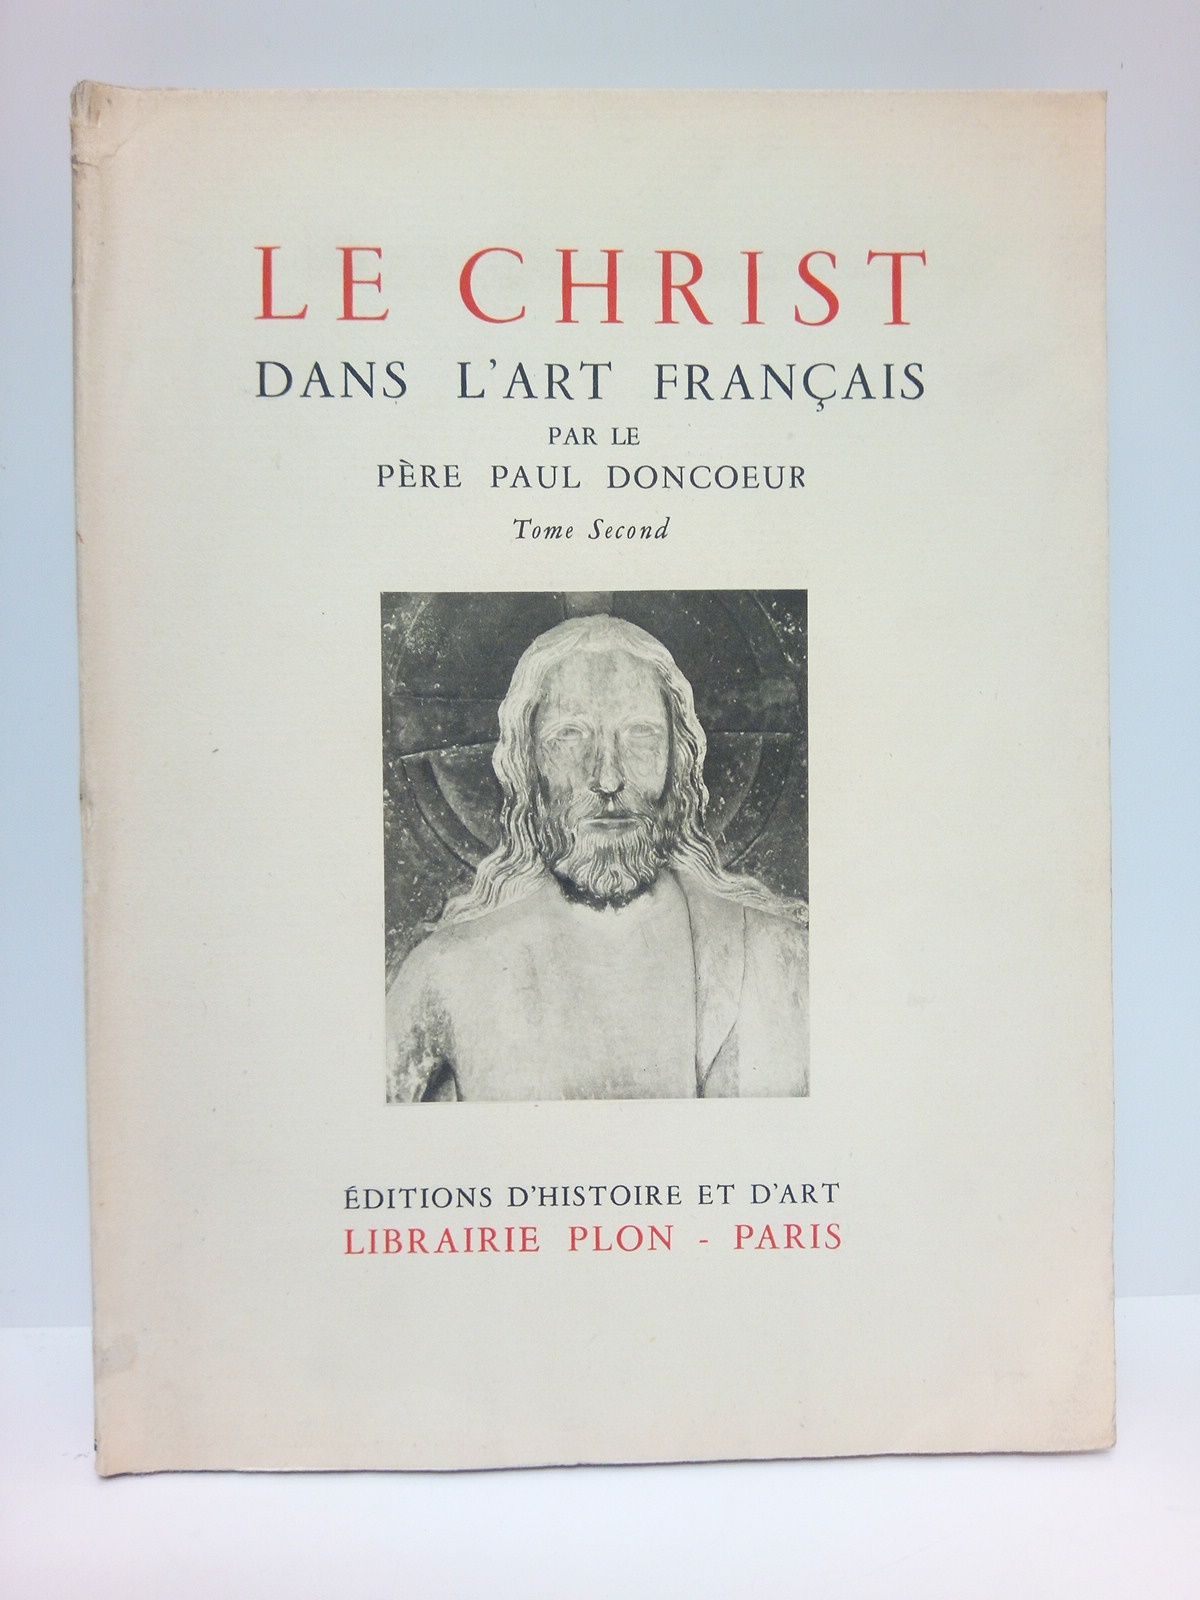 DONCOEUR, Pre Paul - Le Christ dans l'art franais. [Tome Second]